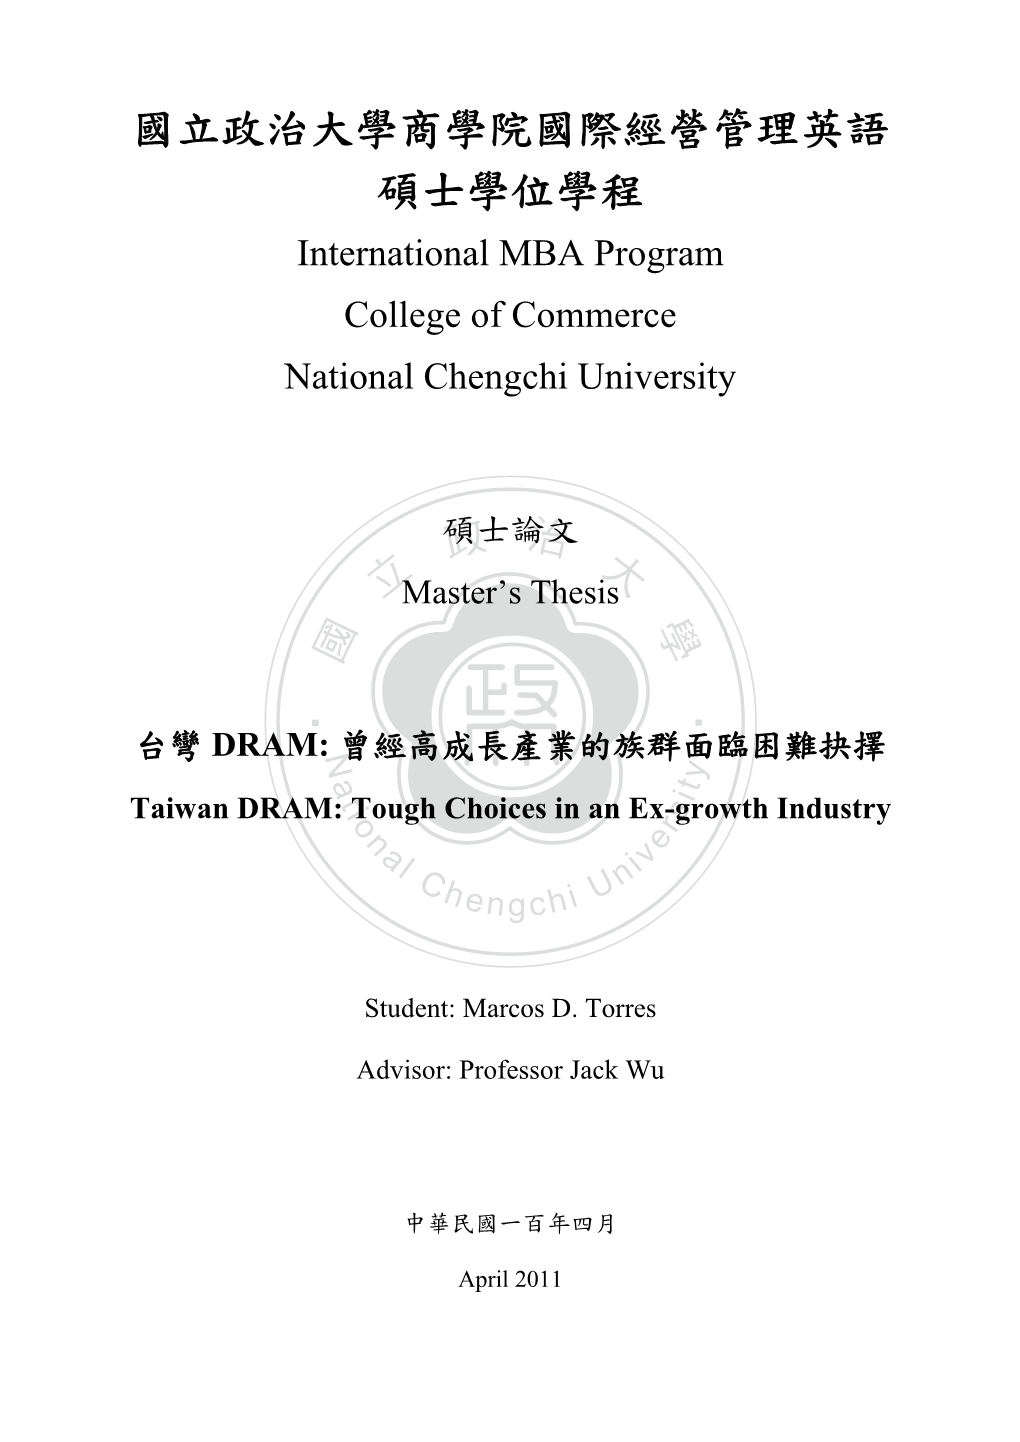 國立政治大學商學院國際經營管理英語 碩士學位學程 International MBA Program College of Commerce National Chengchi University